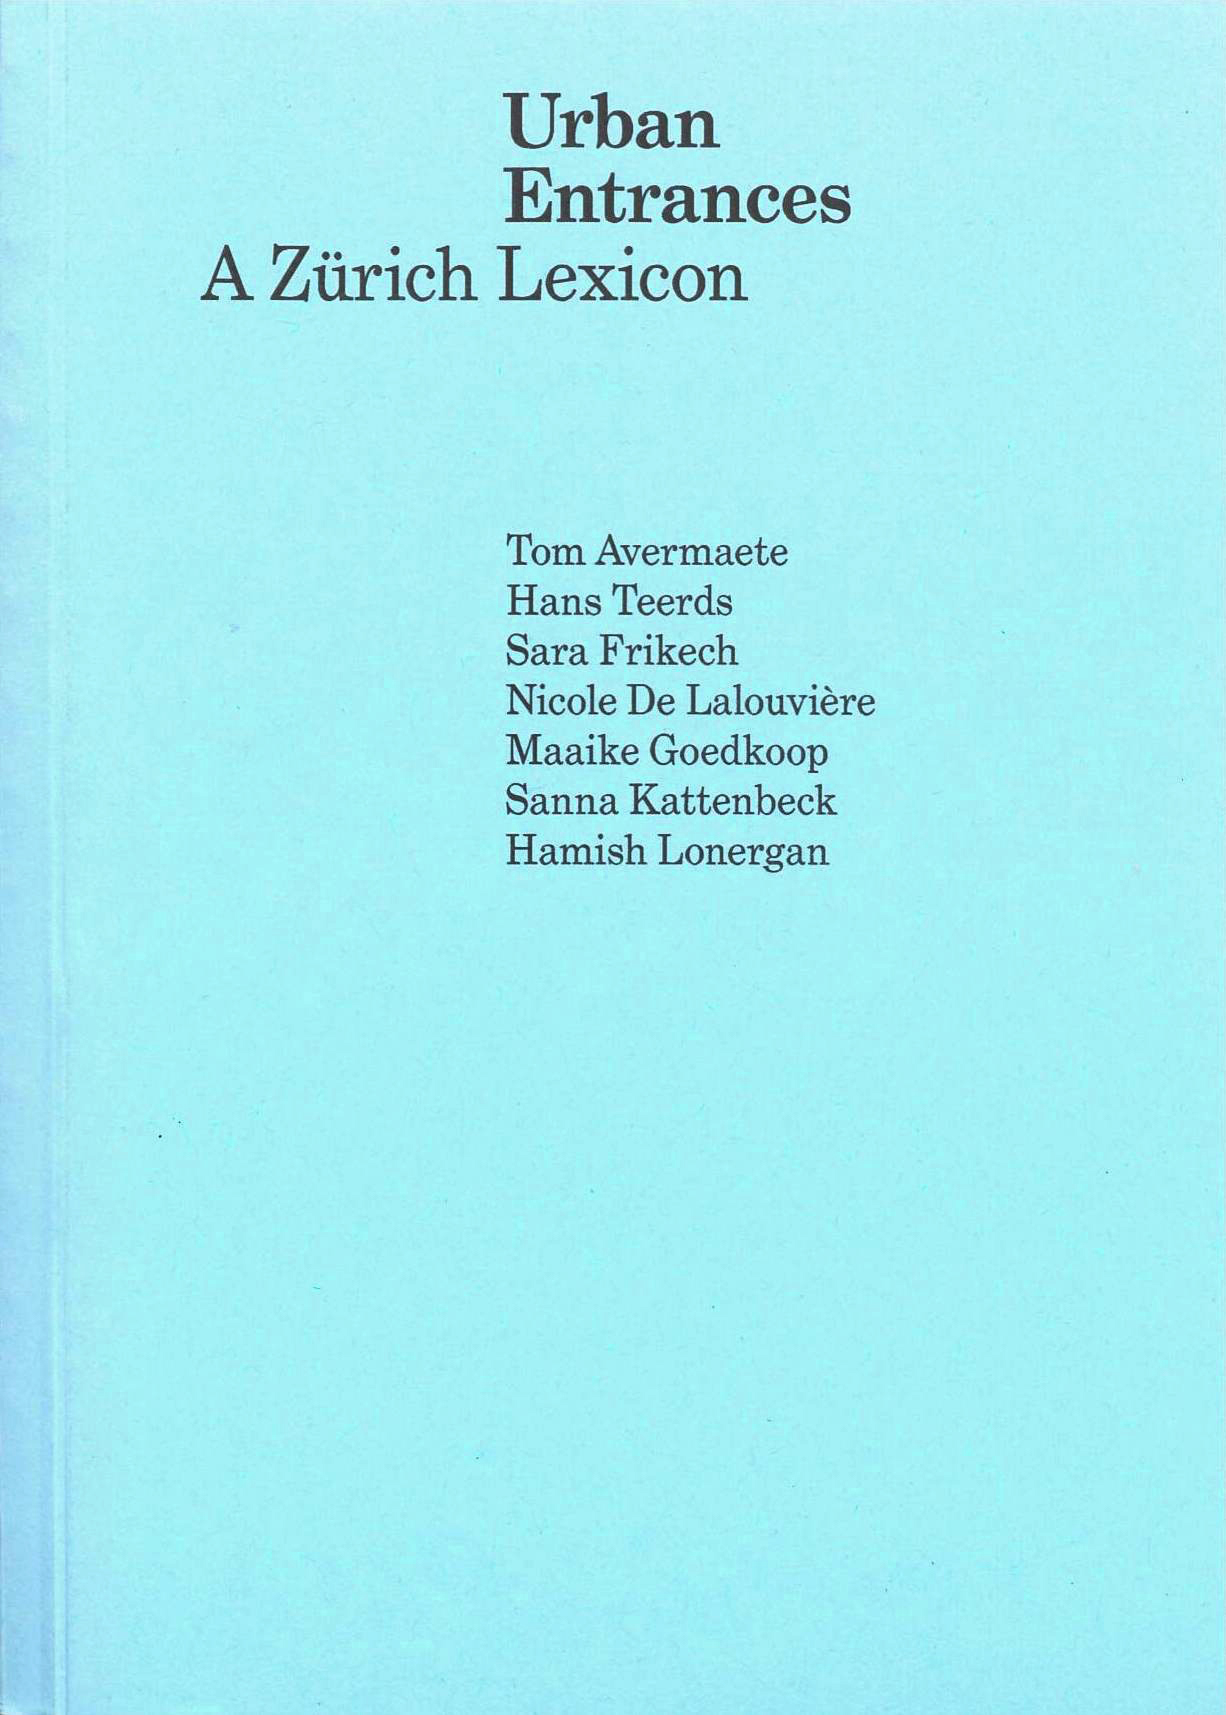 Urban Entrances - A Zürich Lexicon